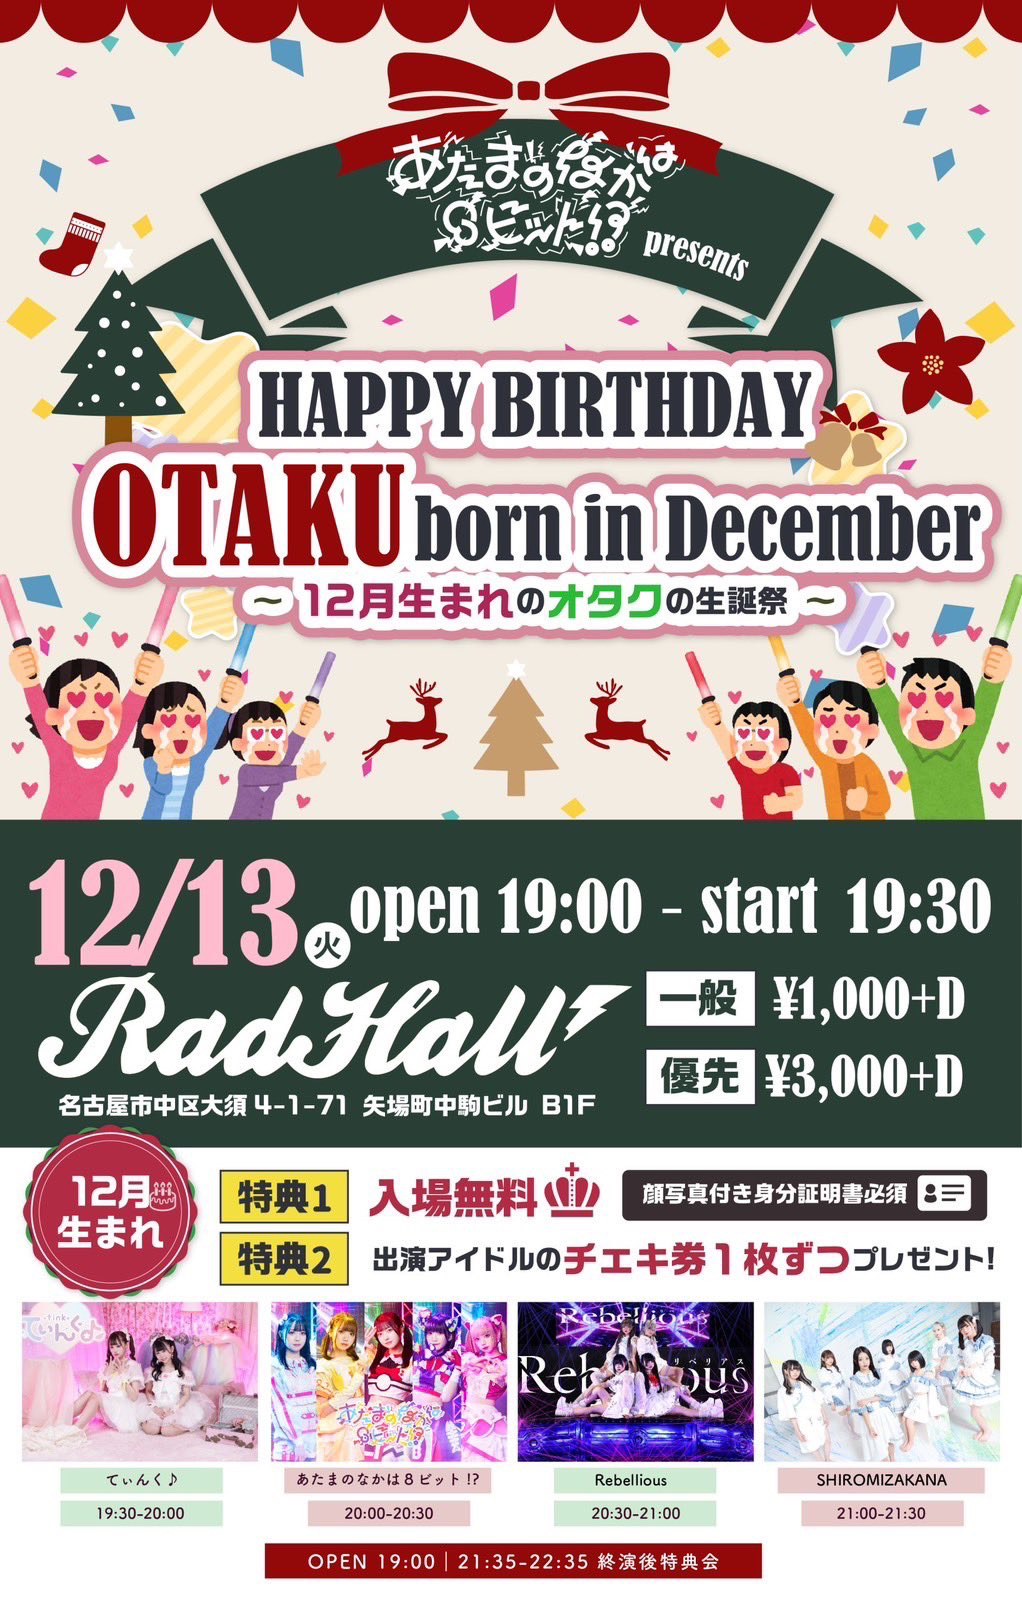 あたまのなかは8ビット!? Presents HAPPY BIRTH DAY OTAKU born in December